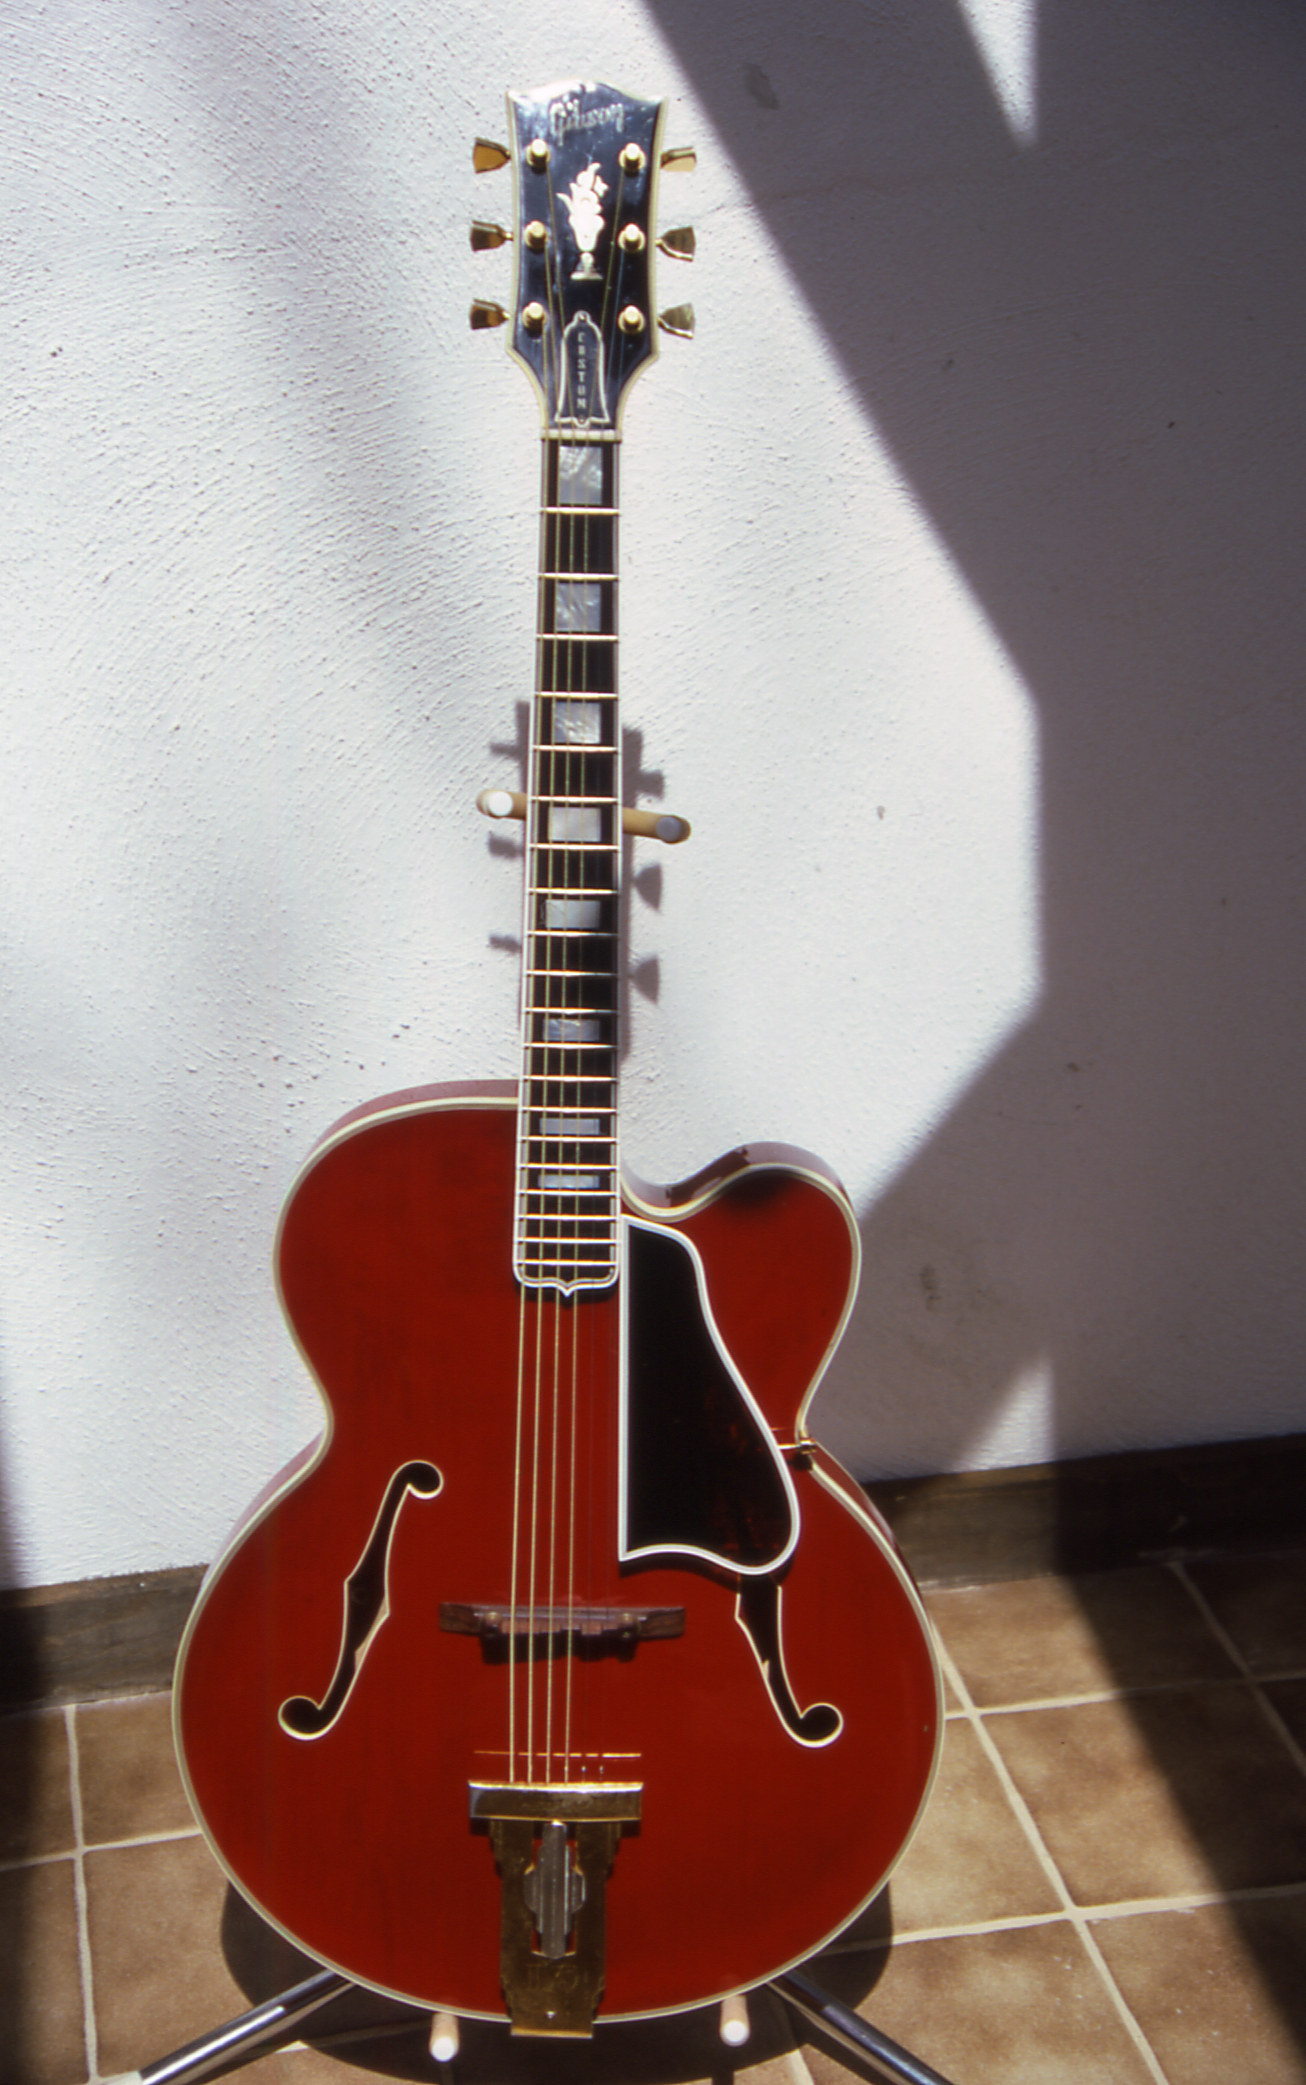 Gibson Thin line Guitar Models-gobel-1960-front-jpg